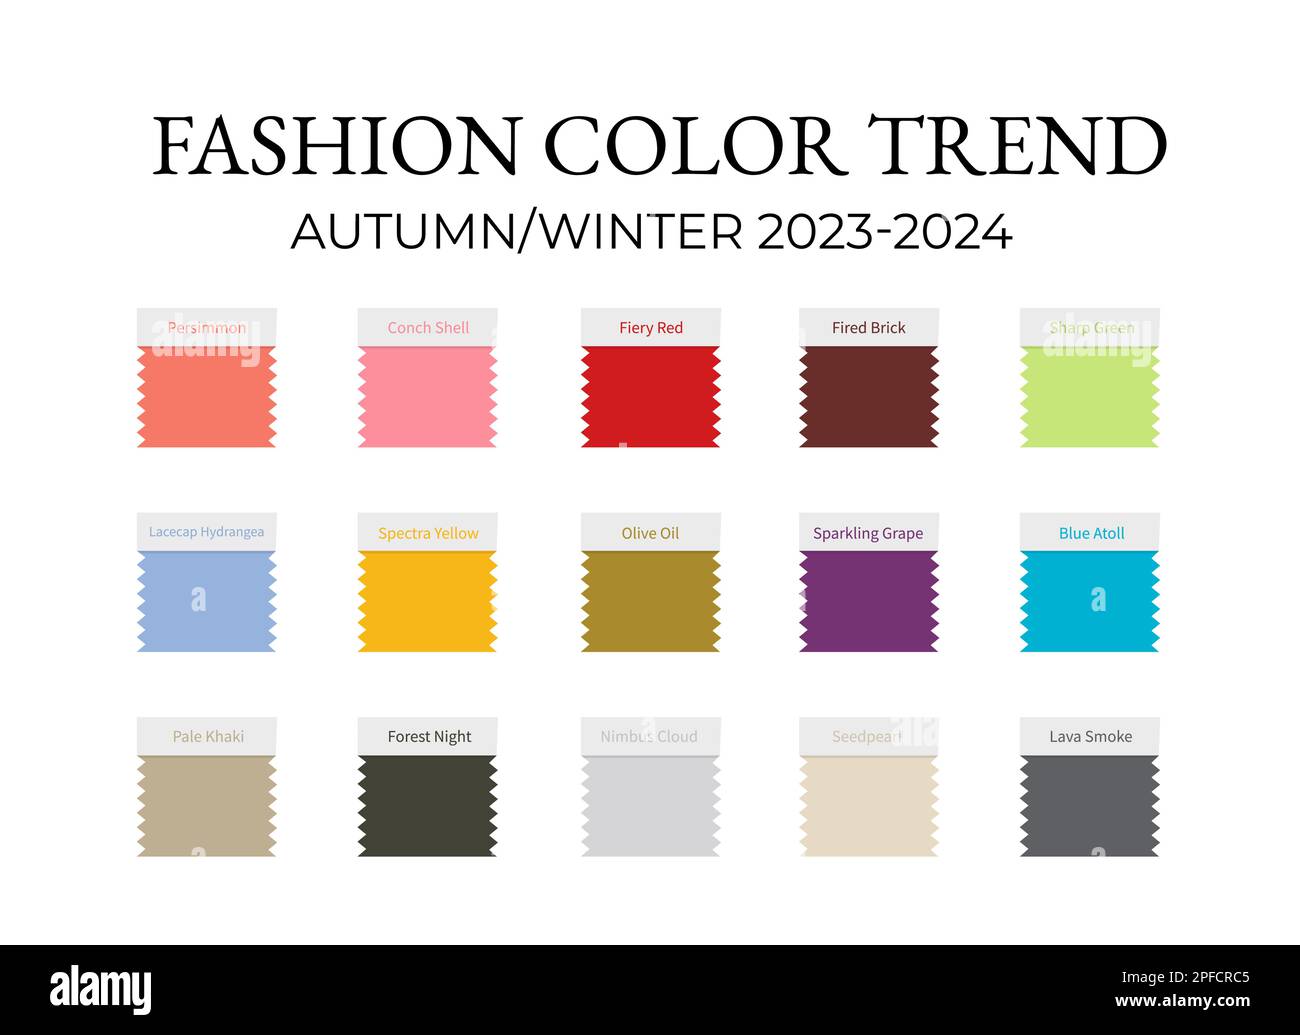 Fashion Color Trend Autumn Winter 2023 2024. Trendy colors palette